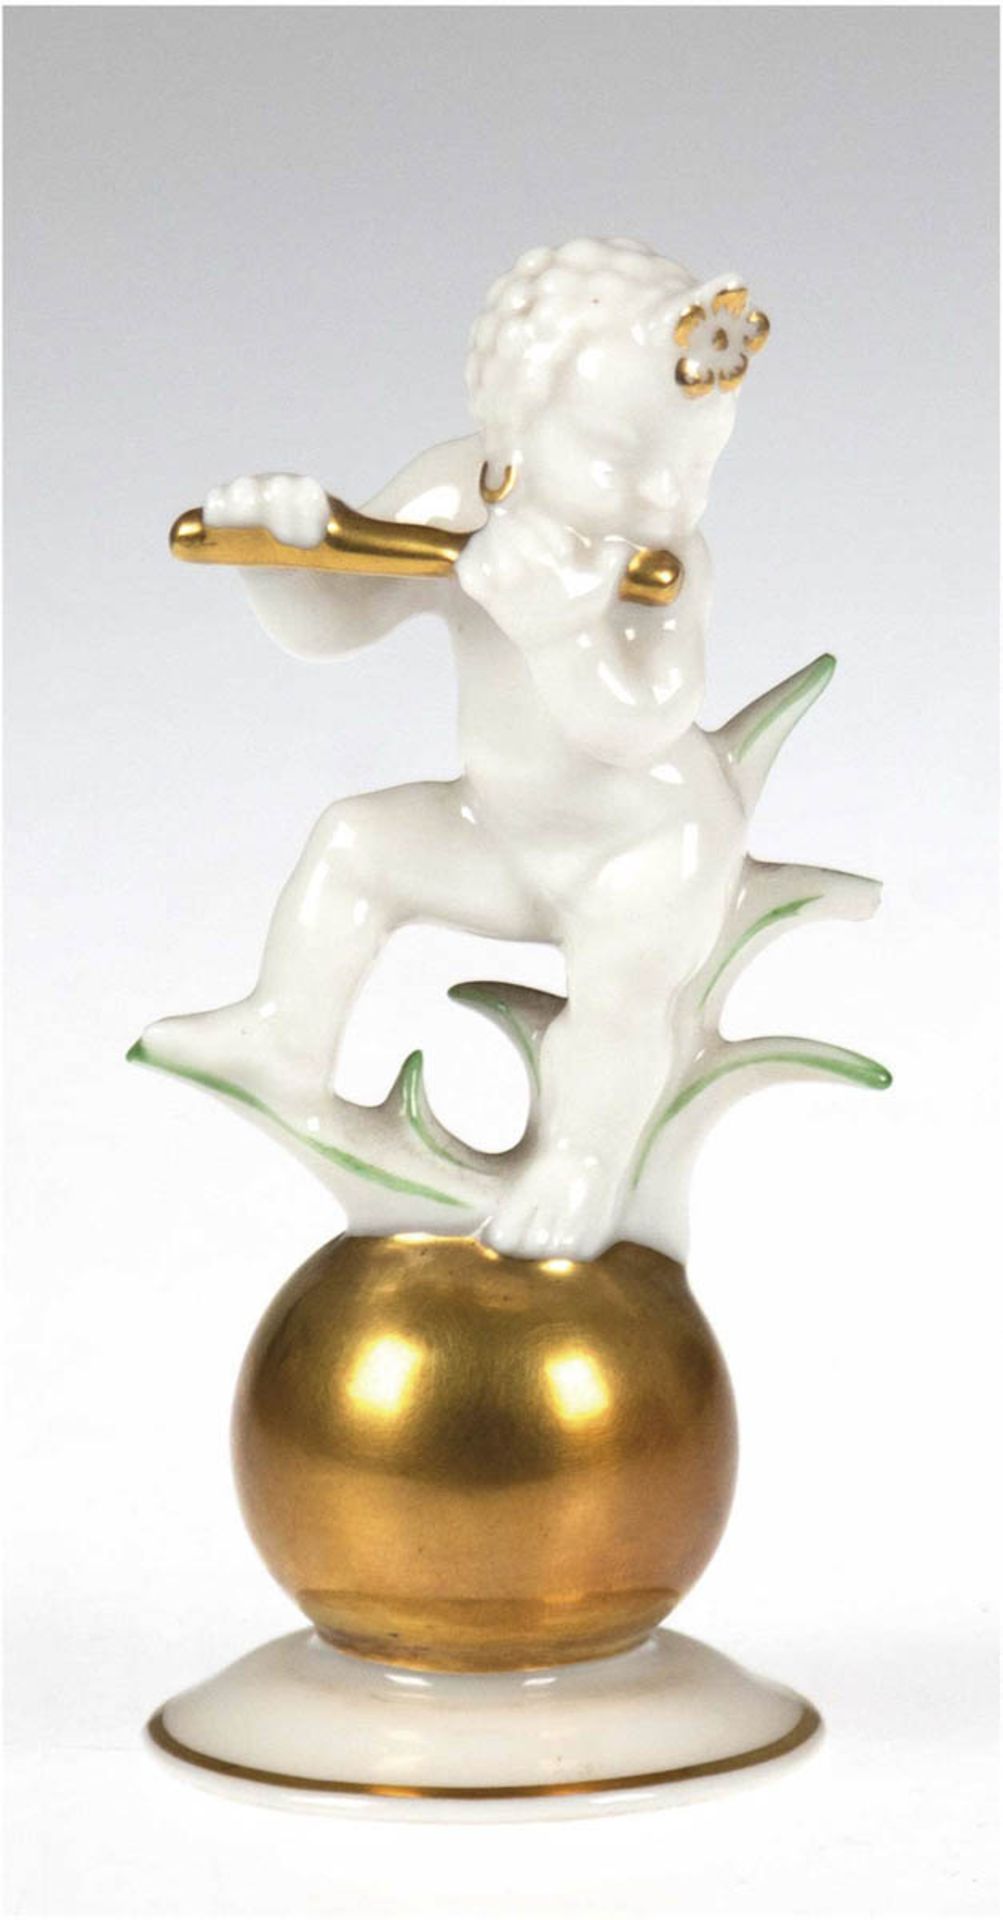 Porzellanfigur "Putto mit Flöte auf Goldkugel", Hutschenreuther, grün und gold staffiert,1 Blatt